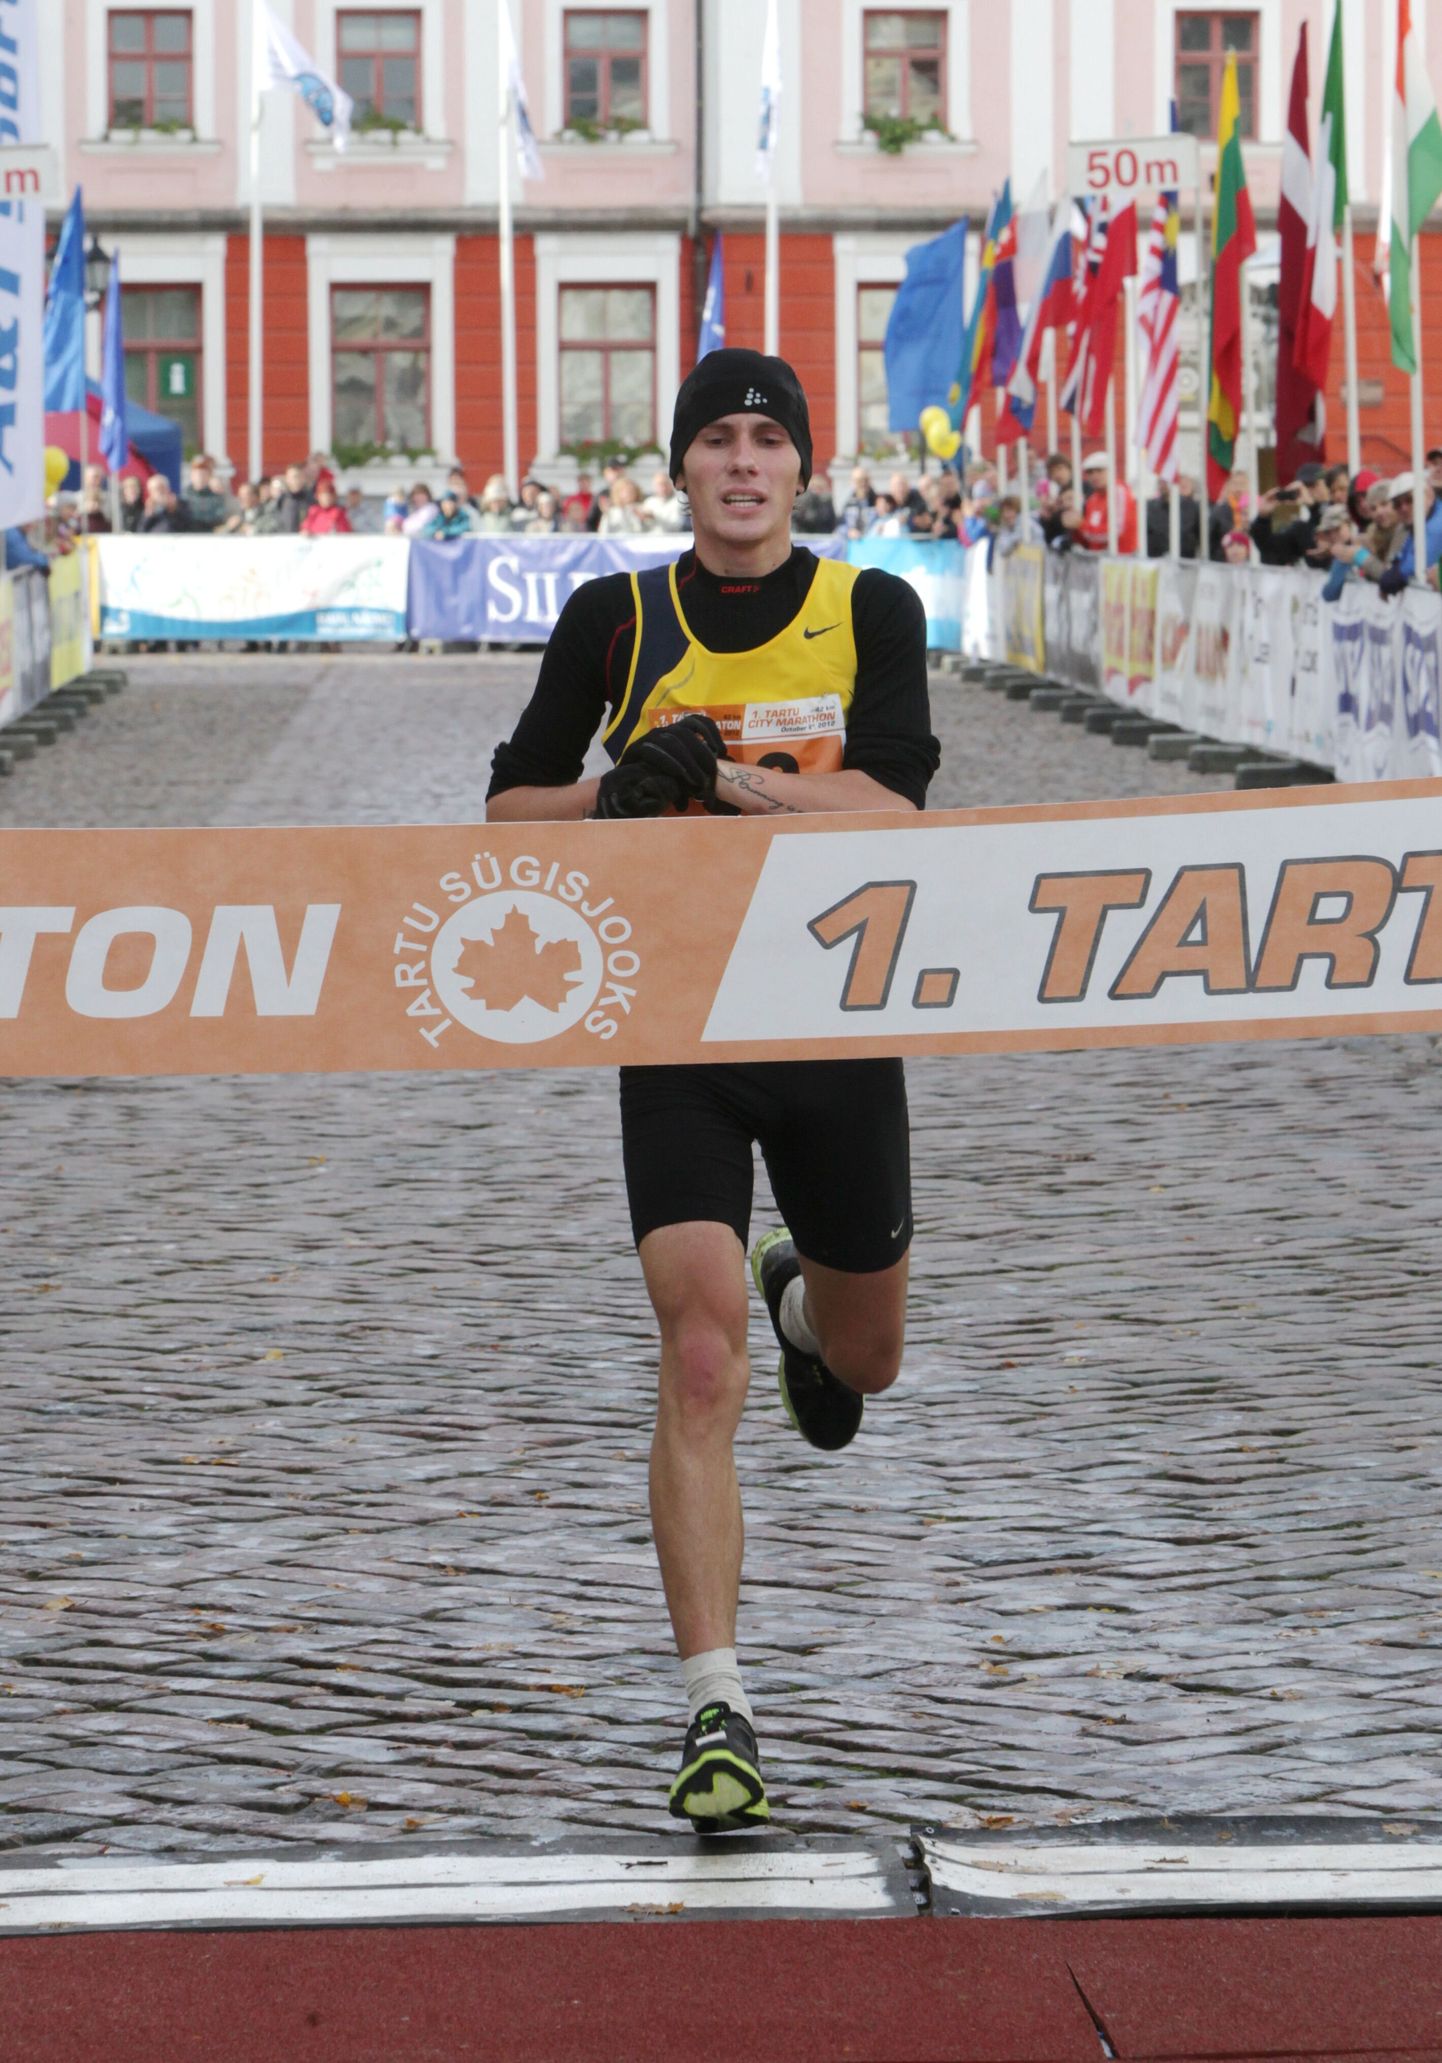 Esimene Tartu linnamaraton. Pildil võitja Dmitri Aristov.